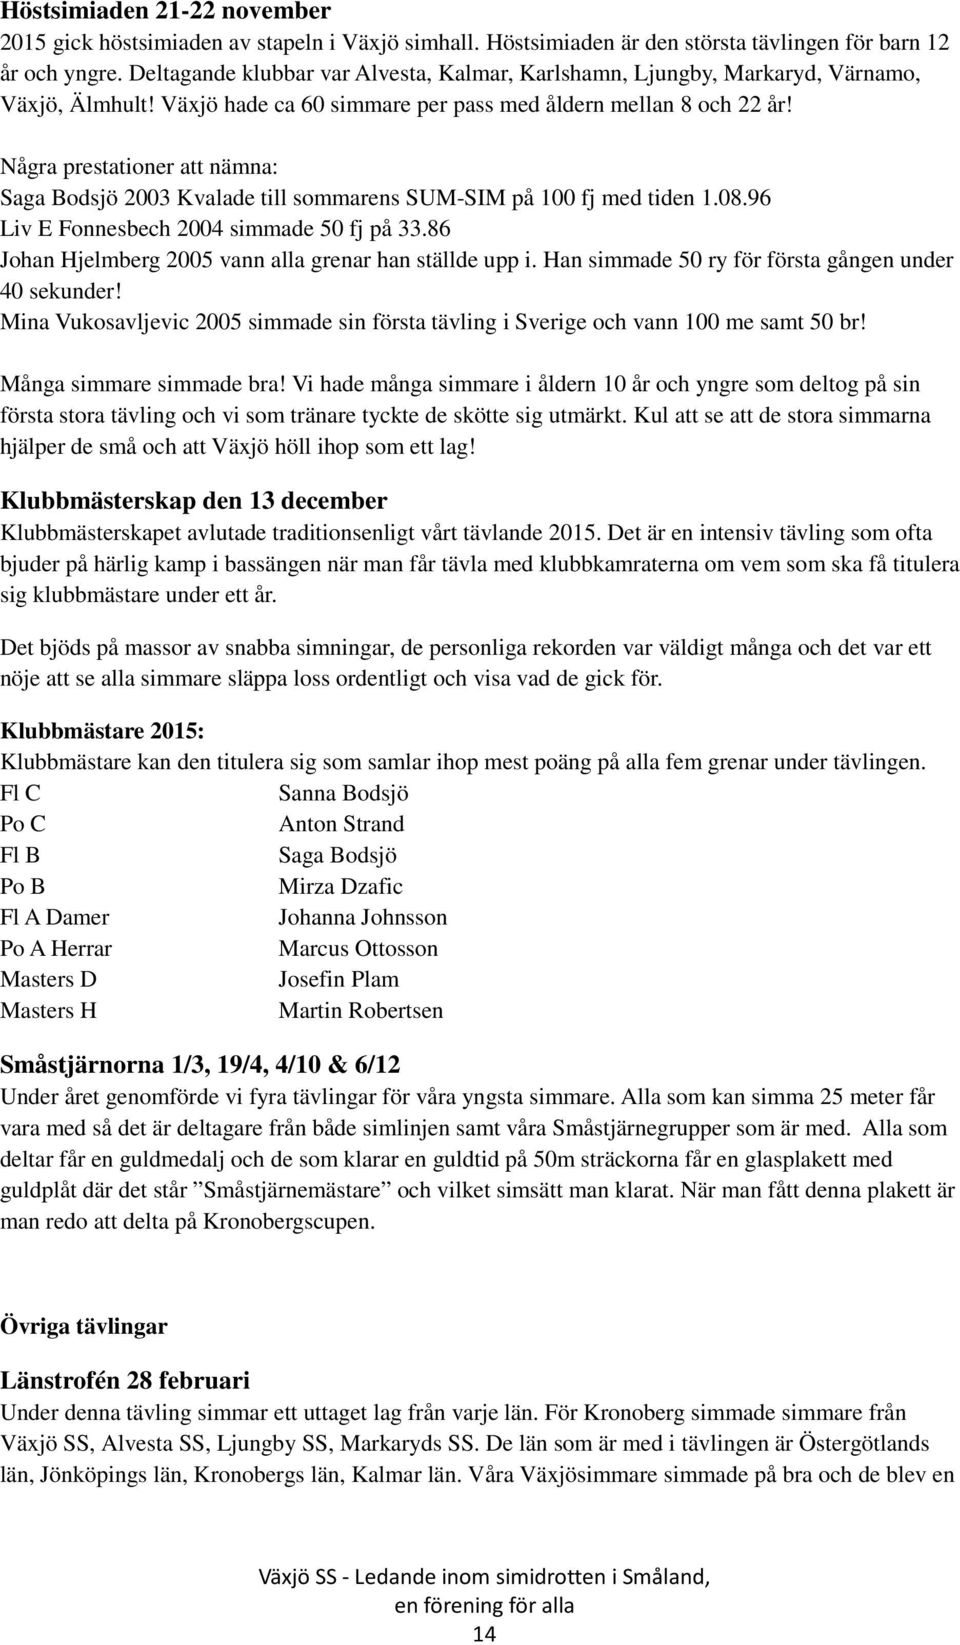 Några prestationer att nämna: Saga Bodsjö 2003 Kvalade till sommarens SUM-SIM på 100 fj med tiden 1.08.96 Liv E Fonnesbech 2004 simmade 50 fj på 33.